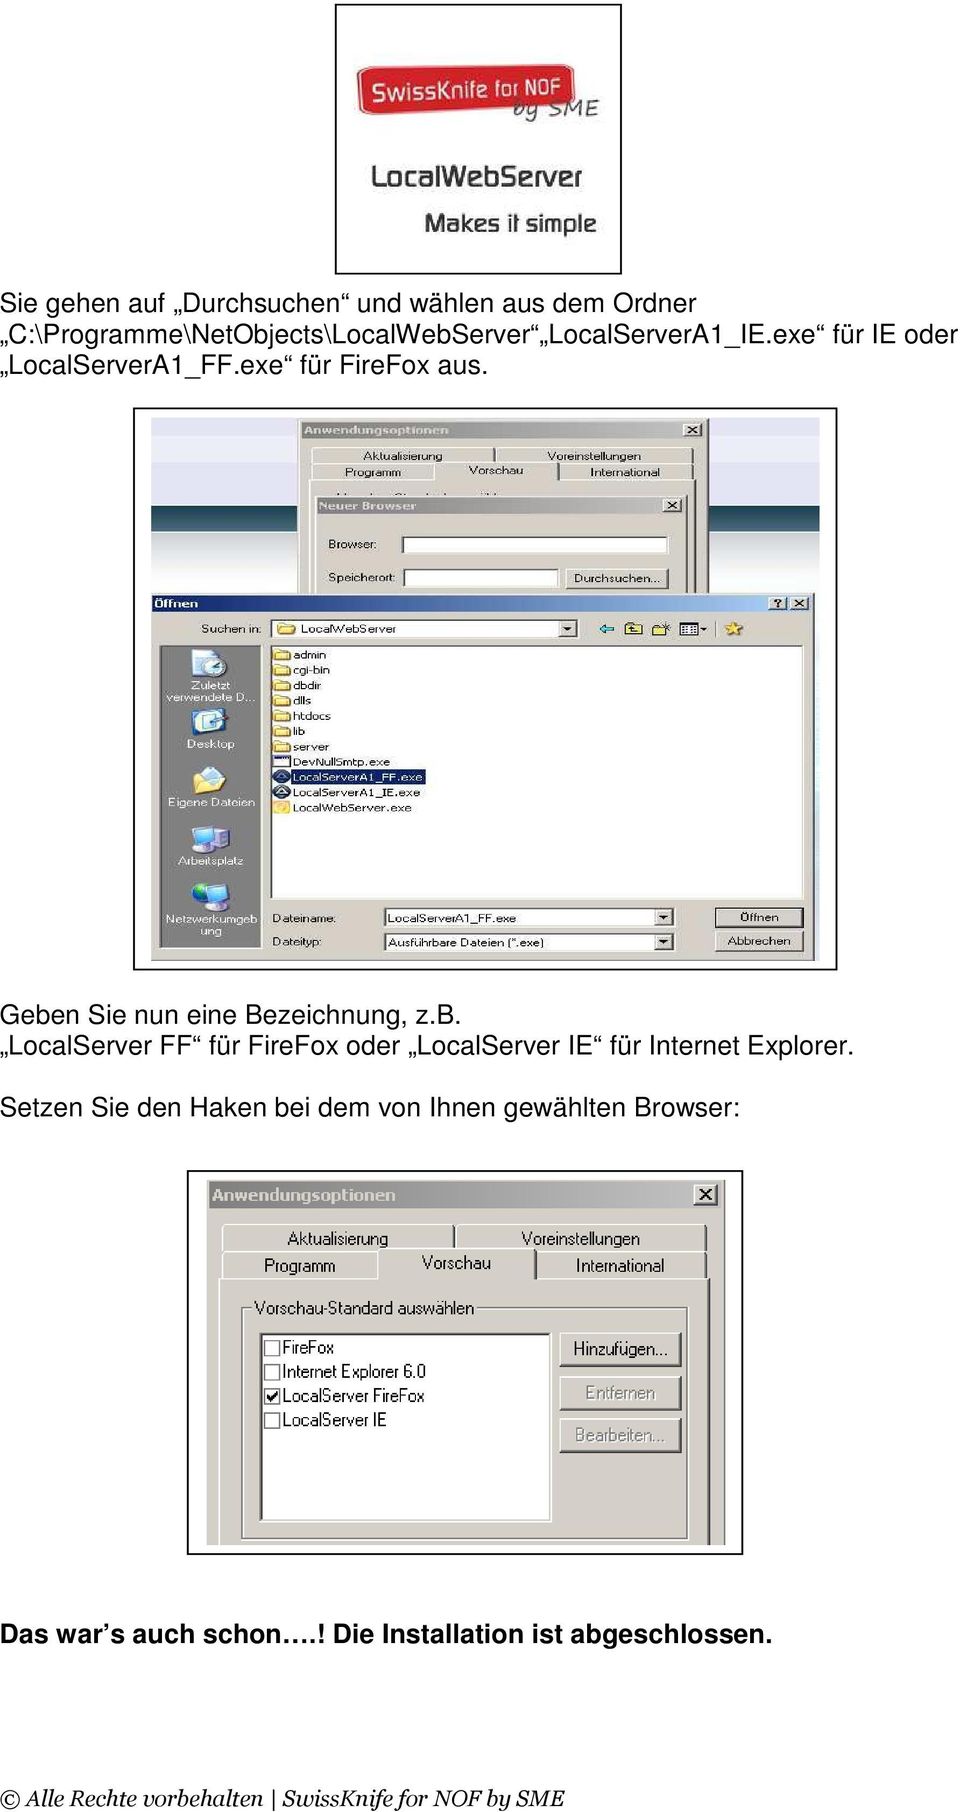 Geben Sie nun eine Bezeichnung, z.b. LocalServer FF für FireFox oder LocalServer IE für Internet Explorer.